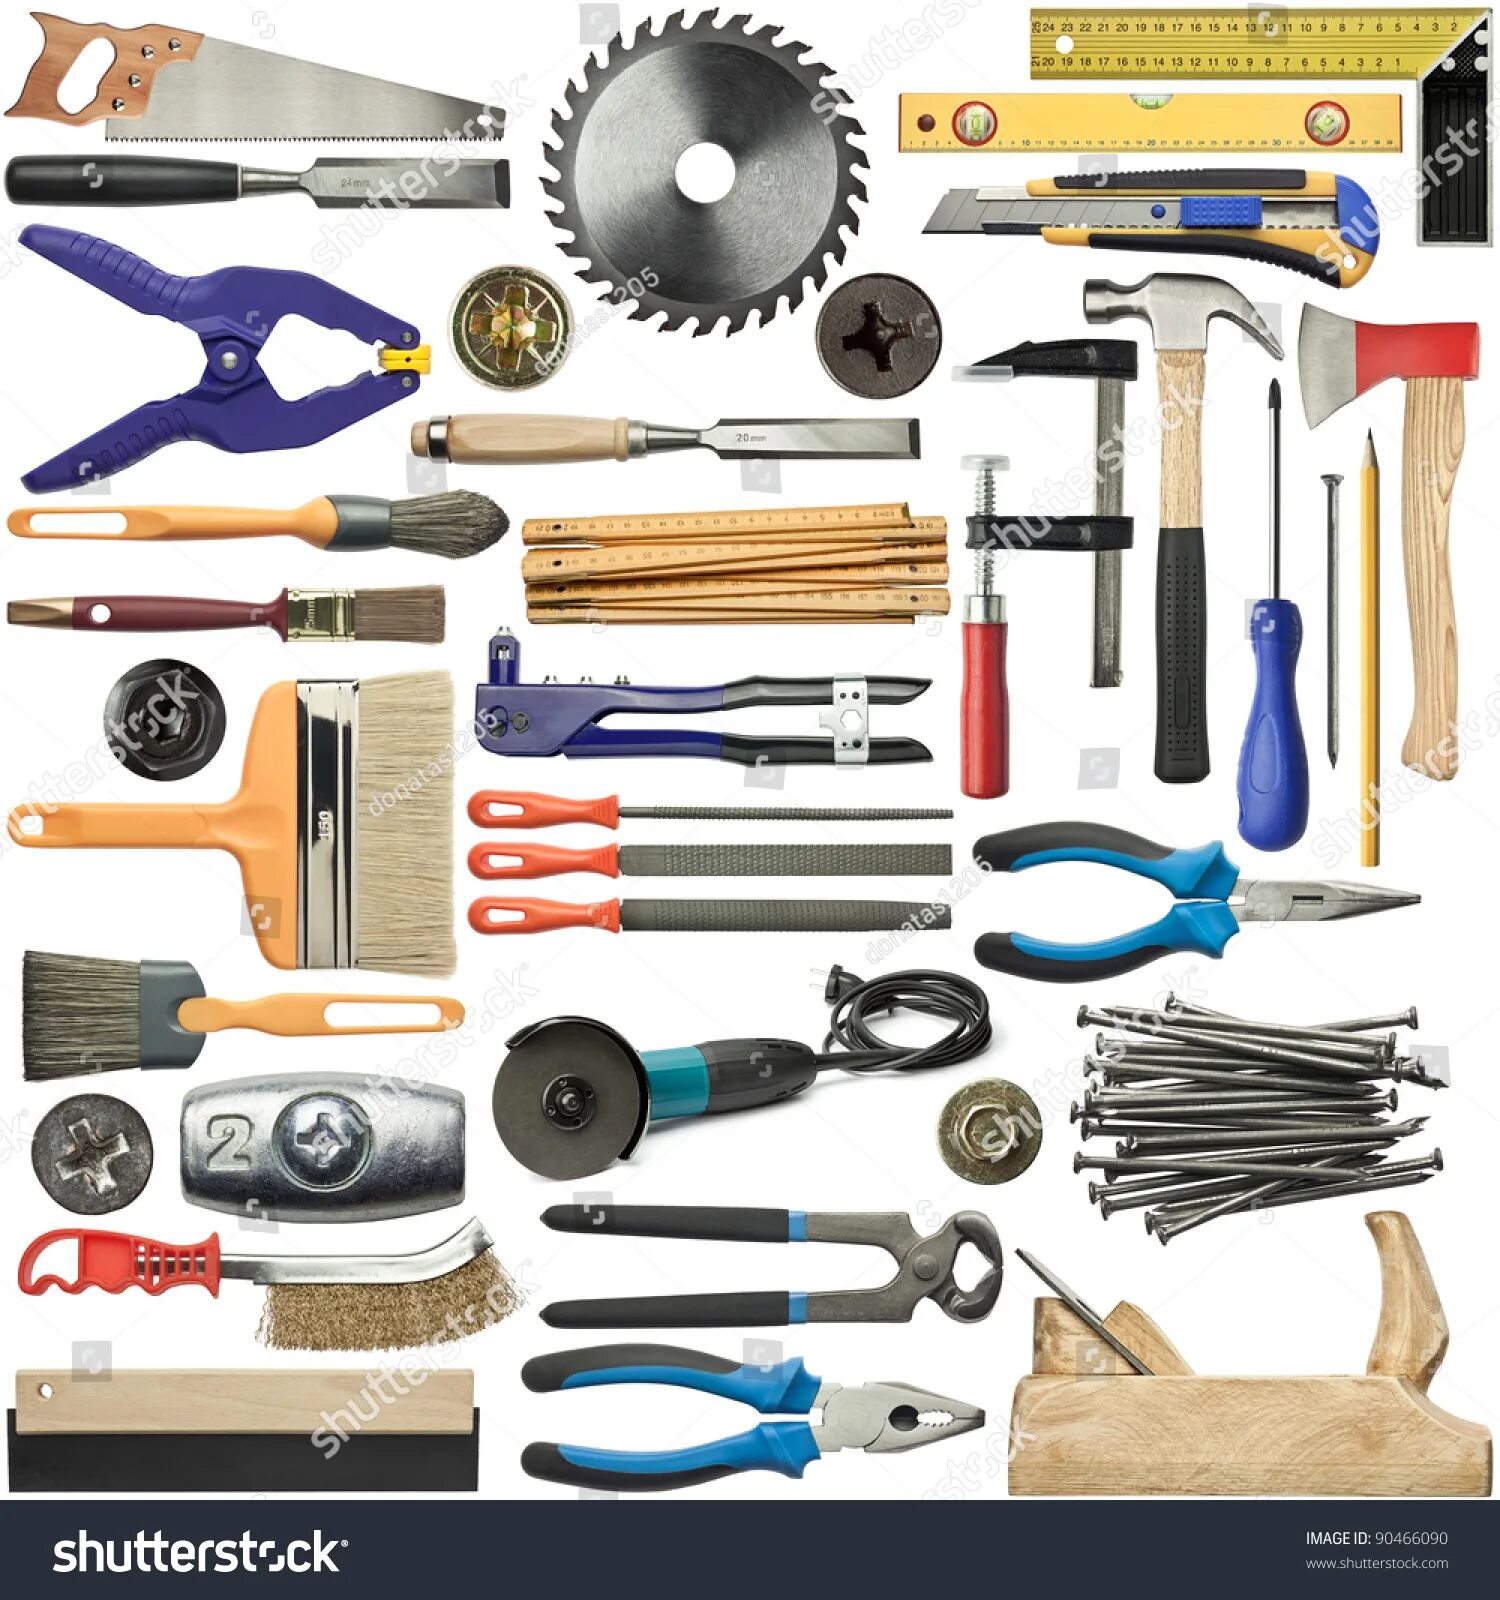 Then tools. Инструменты для деревообработки. Инструменты плотника. Строительные материалы и инструменты. Инструменты клипарт.